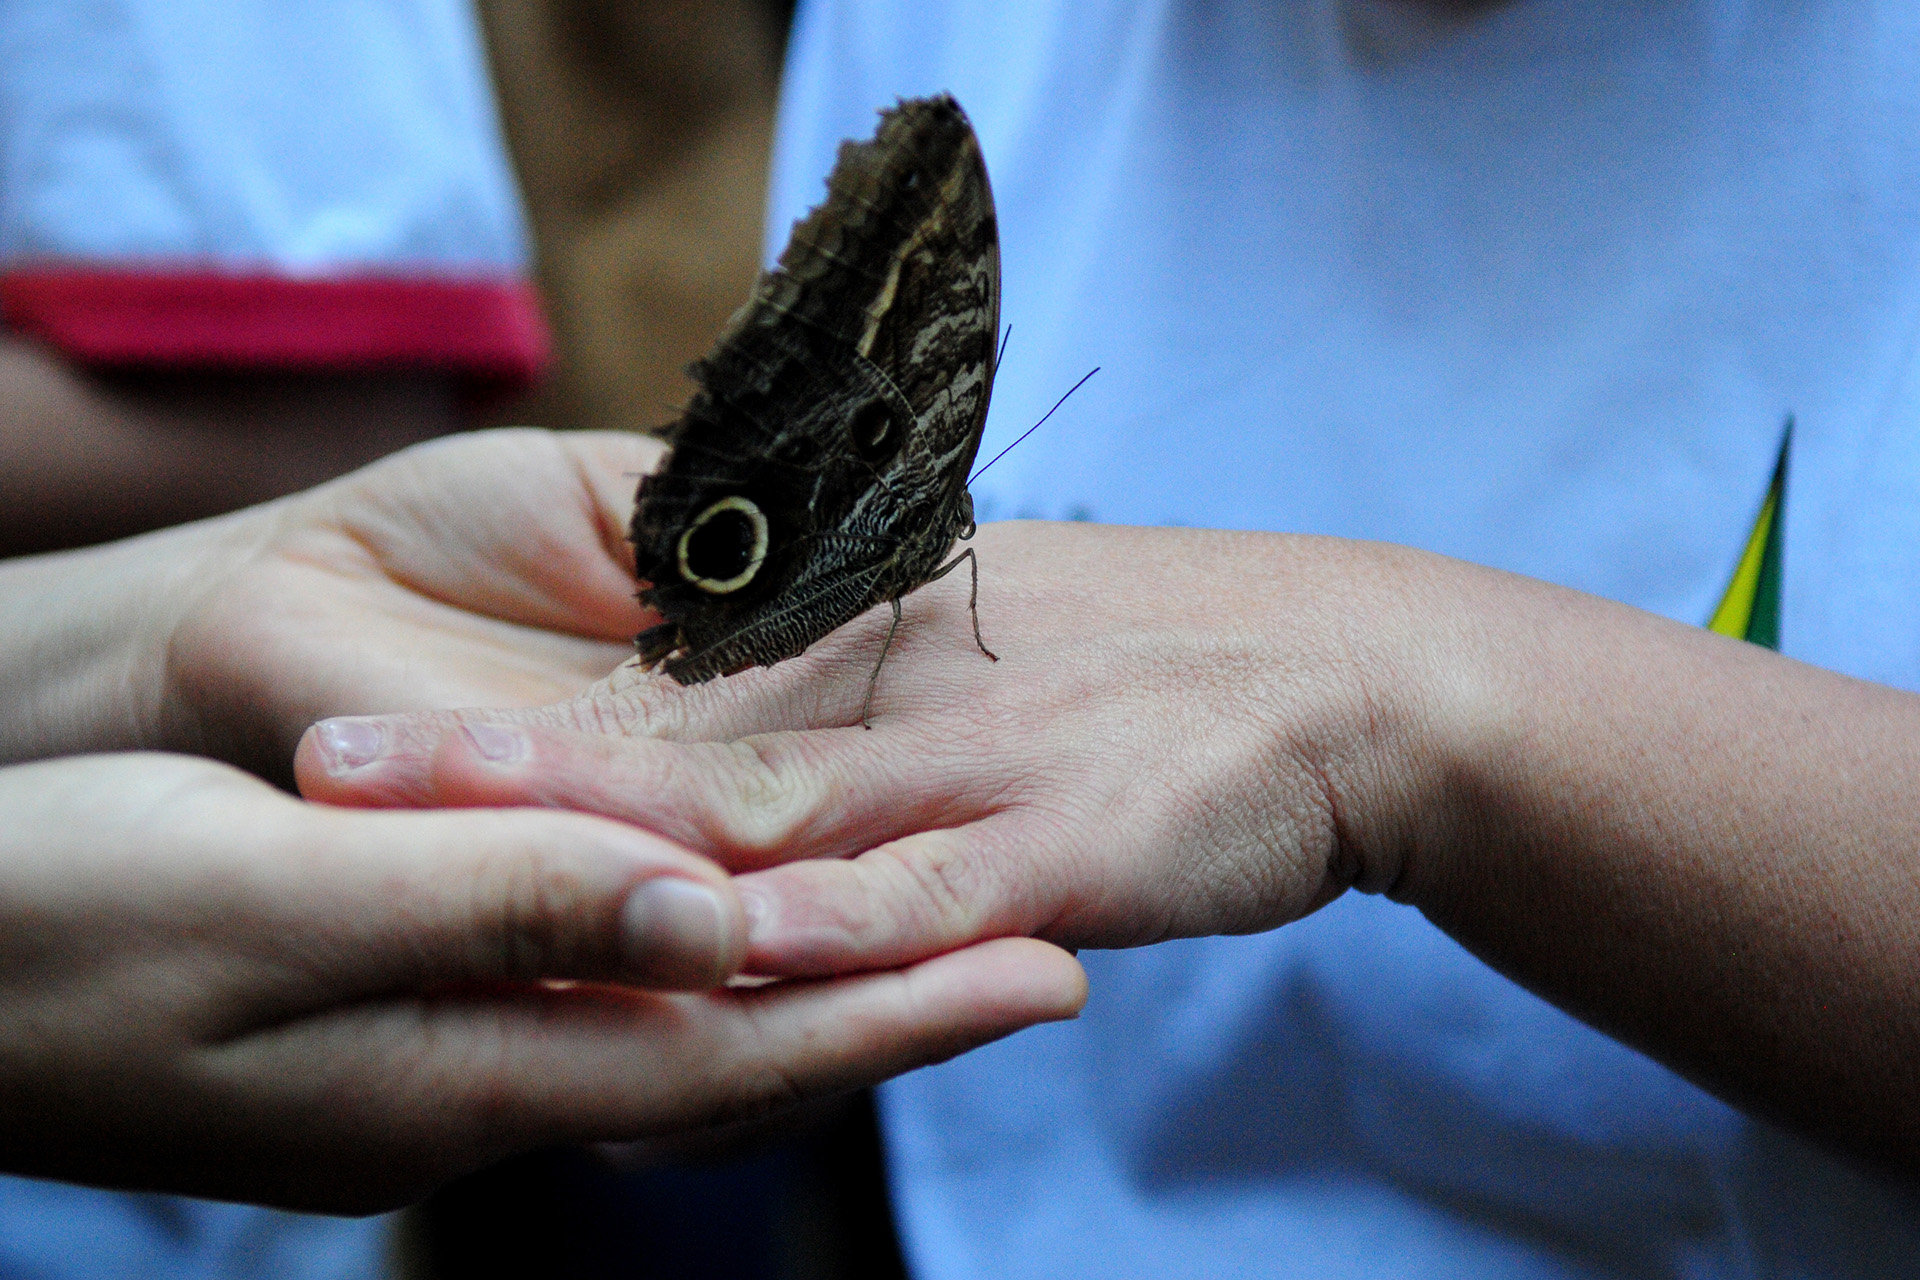 No borboletário, os alunos do Centro de Ensino Especial 1 de Brasília entraram no recinto e interagiram com as borboletas